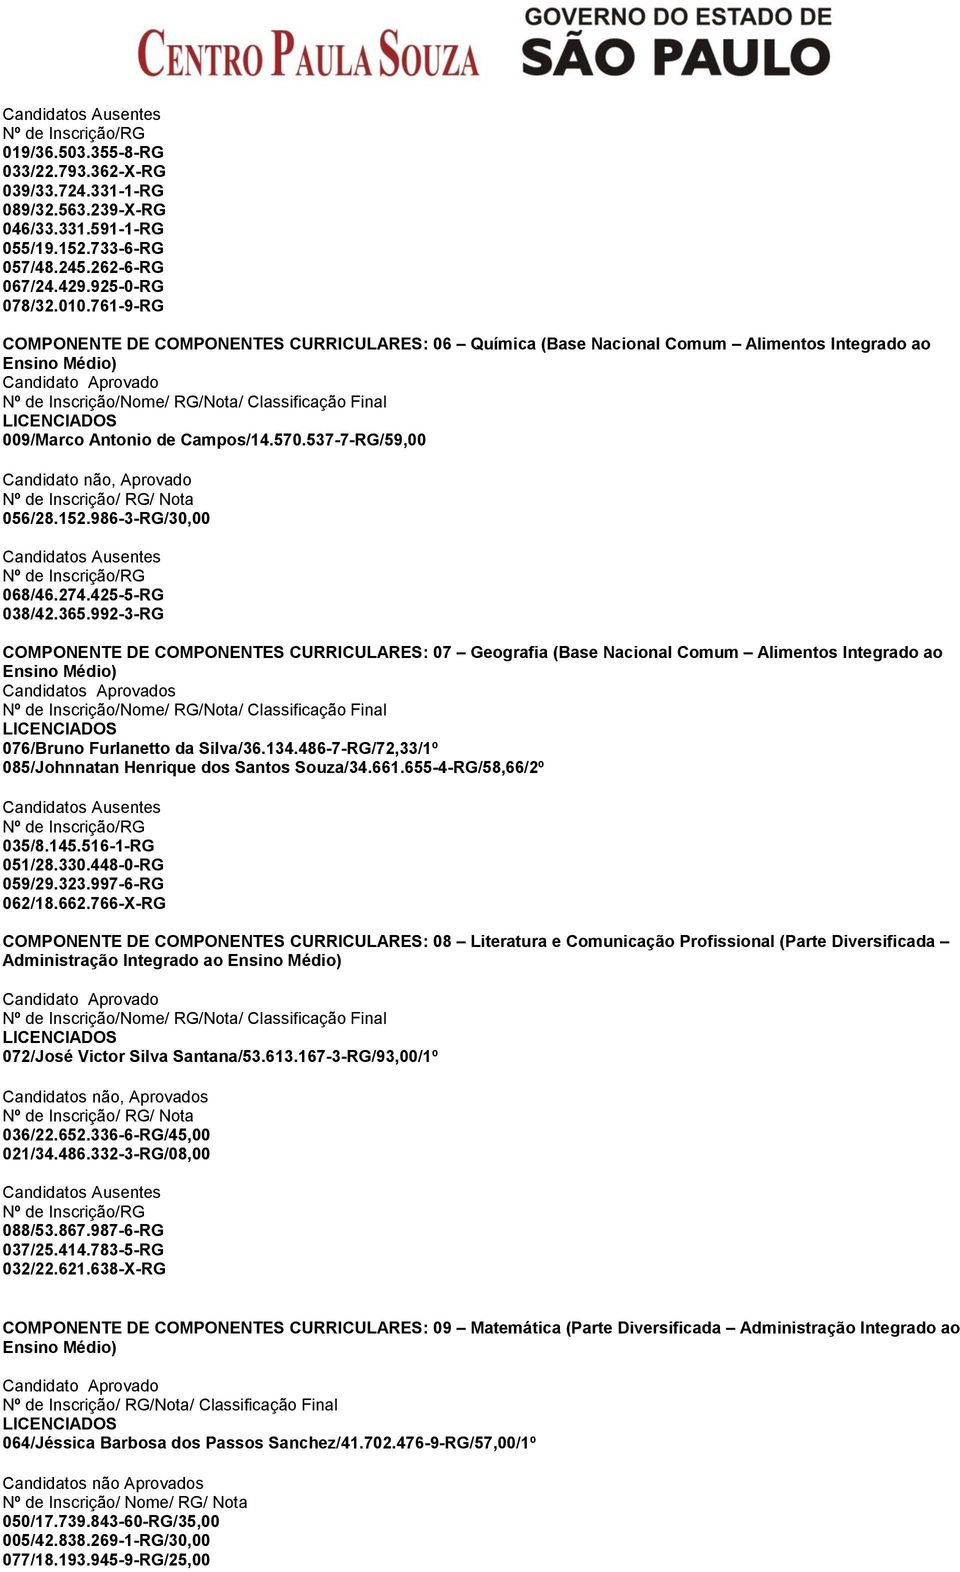 992-3-RG COMPONENTE DE COMPONENTES CURRICULARES: 07 Geografia (Base Nacional Comum Alimentos Integrado ao 076/Bruno Furlanetto da Silva/36.134.